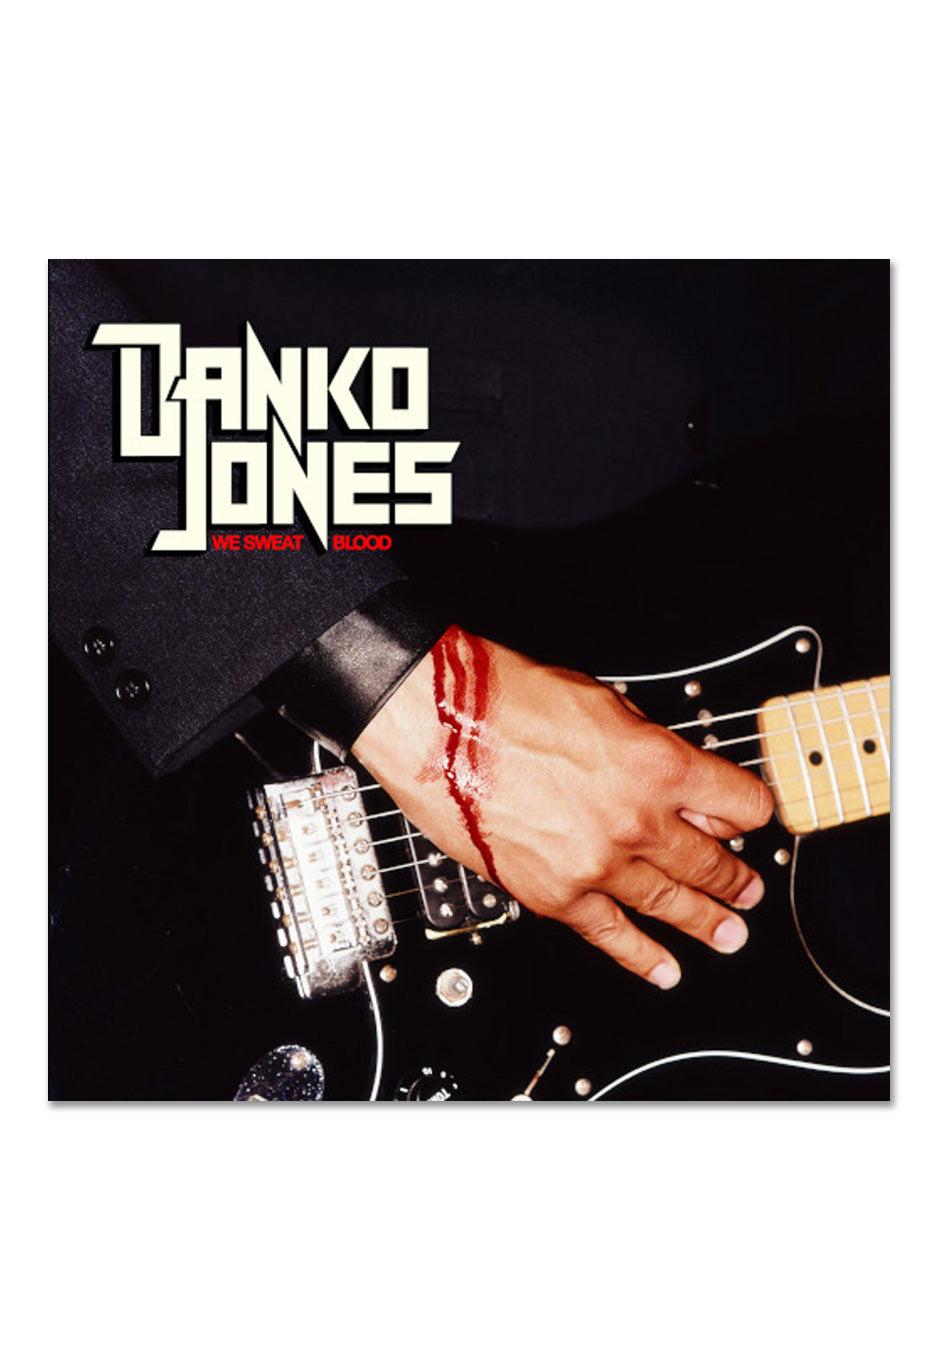 Danko Jones - We Sweat Blood - CD